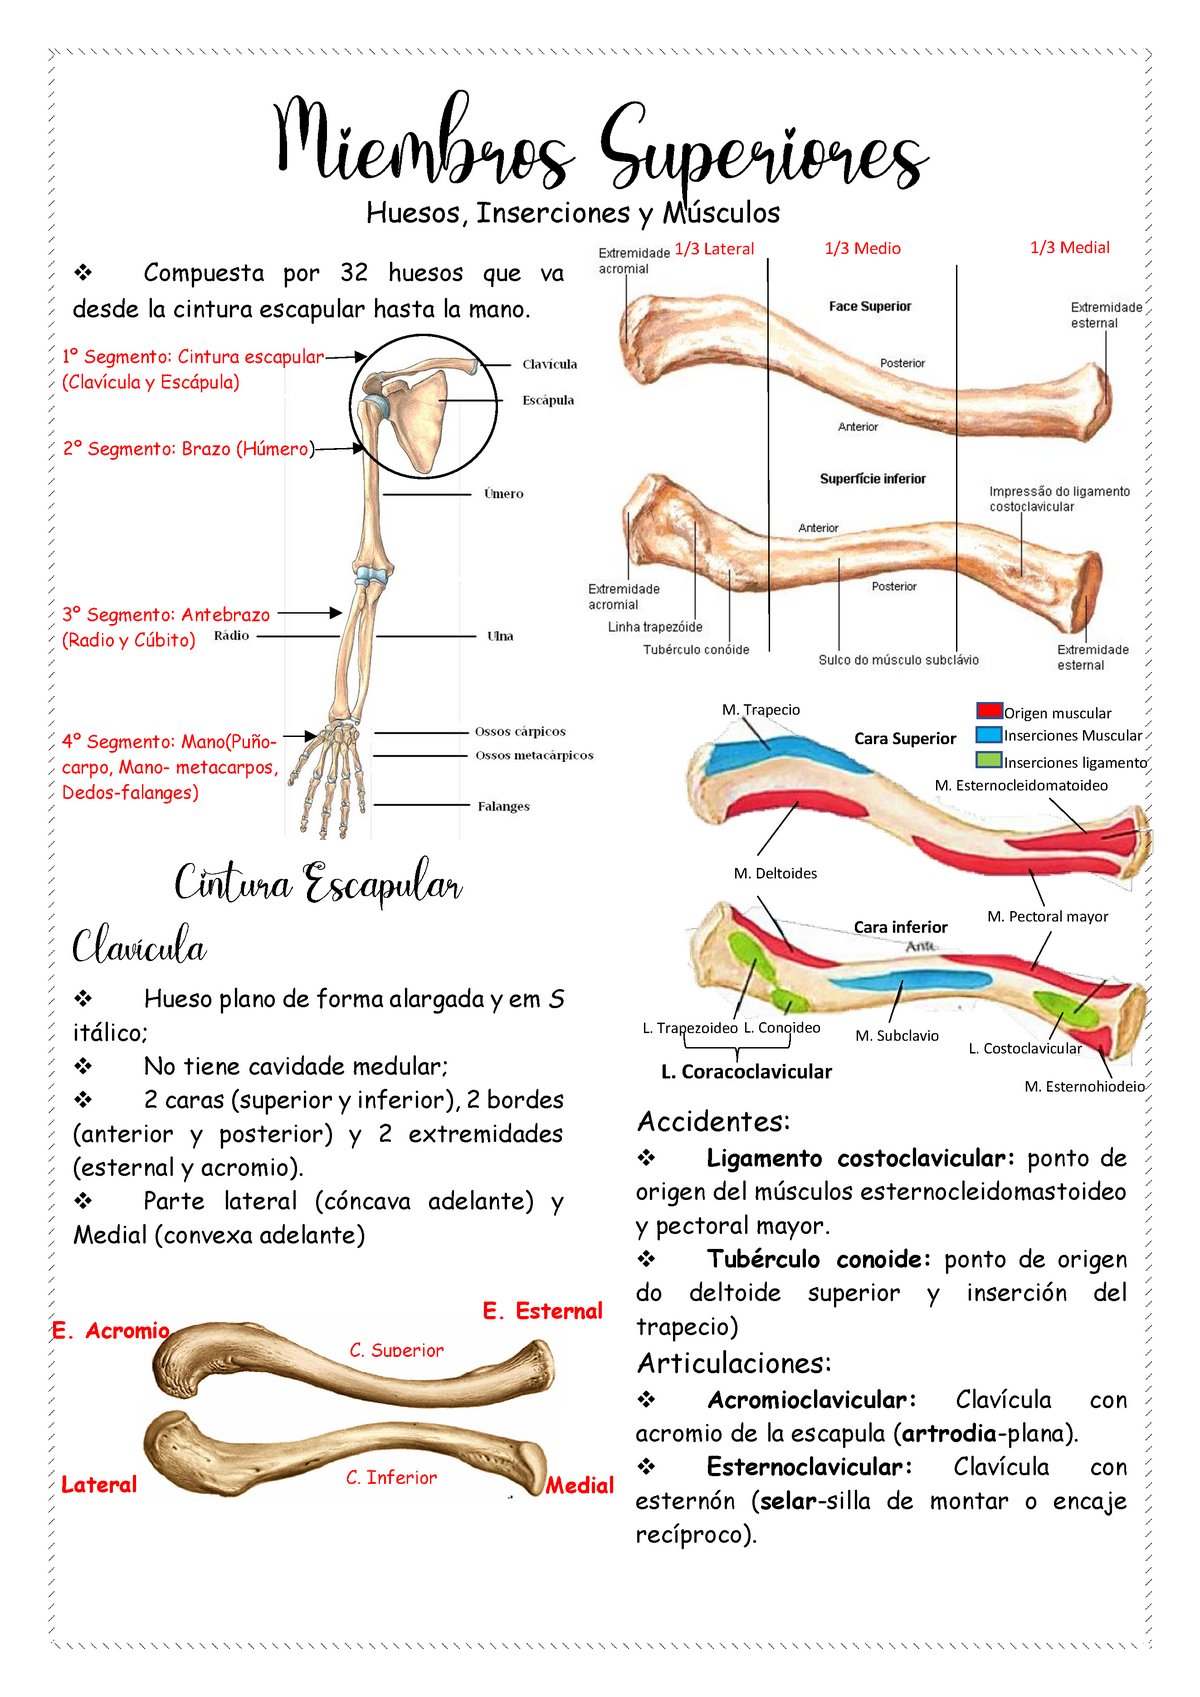 Dona 10 on X: ¡Un poquito de anatomía para nuestras pilateras! ¿Qué huesos  conforman la cintura escapular, encargada de proporcionar movilidad al tren  superior?  #anatomia #pilates   / X